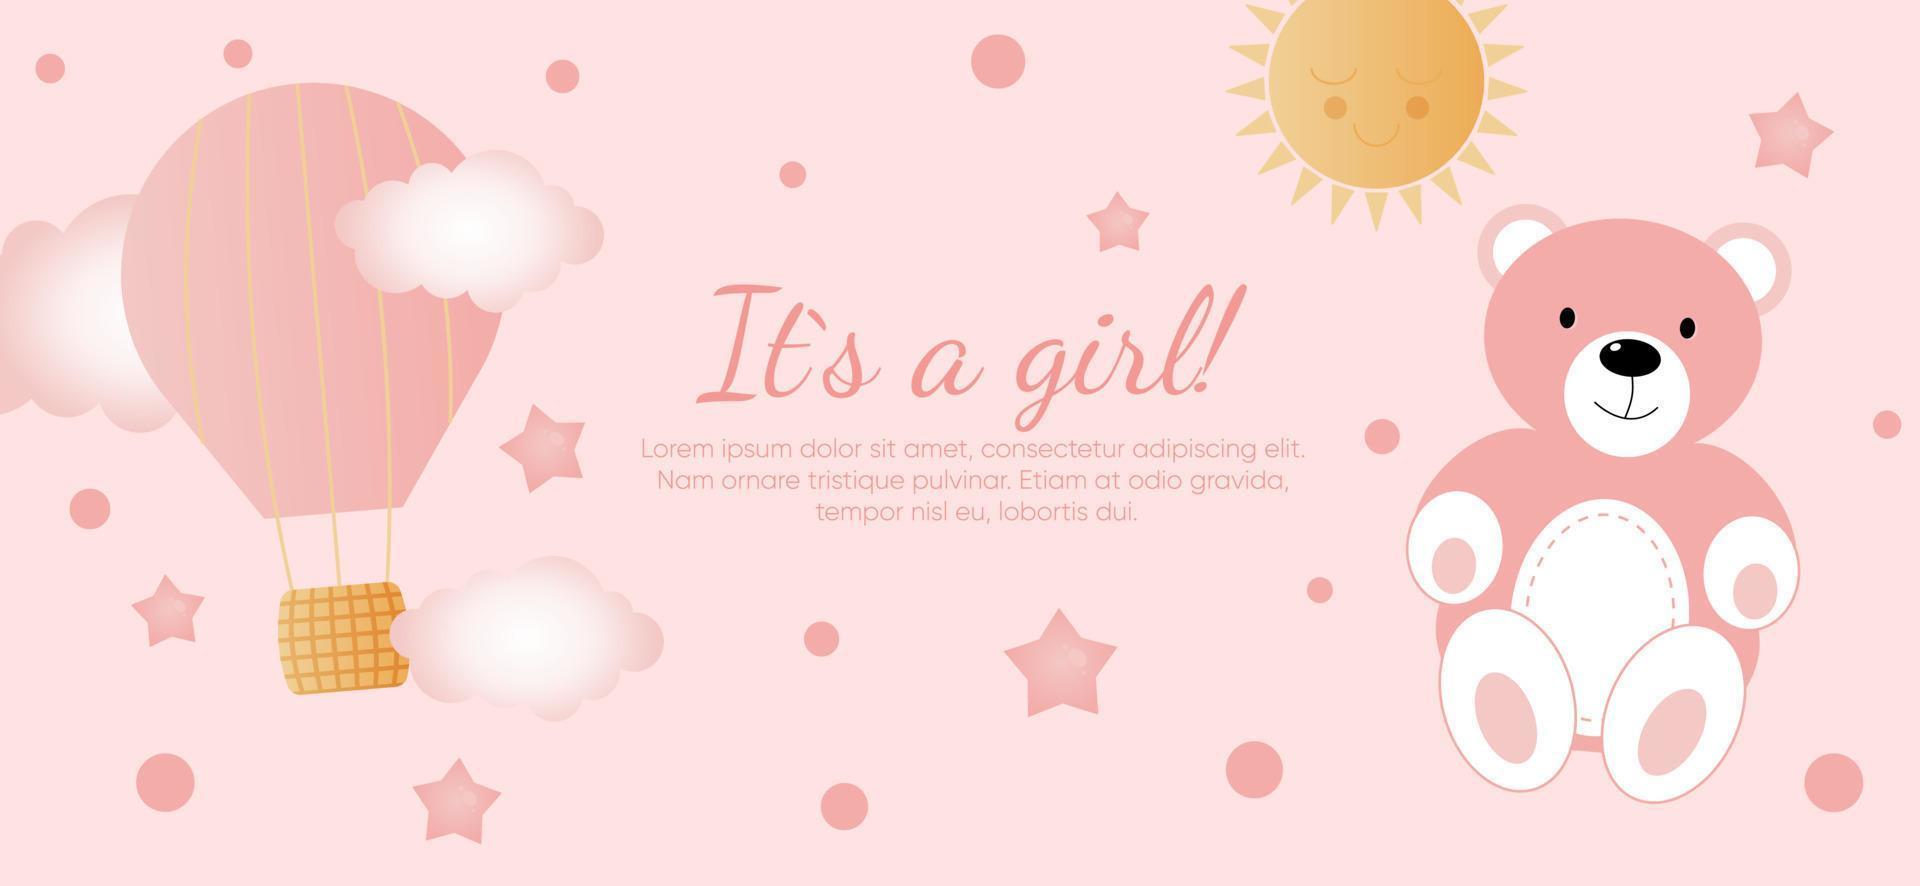 bebis dusch horisontell baner med rosa Björn, moln, stjärnor, Sol och ballong på rosa bakgrund. den s en flicka. vektor